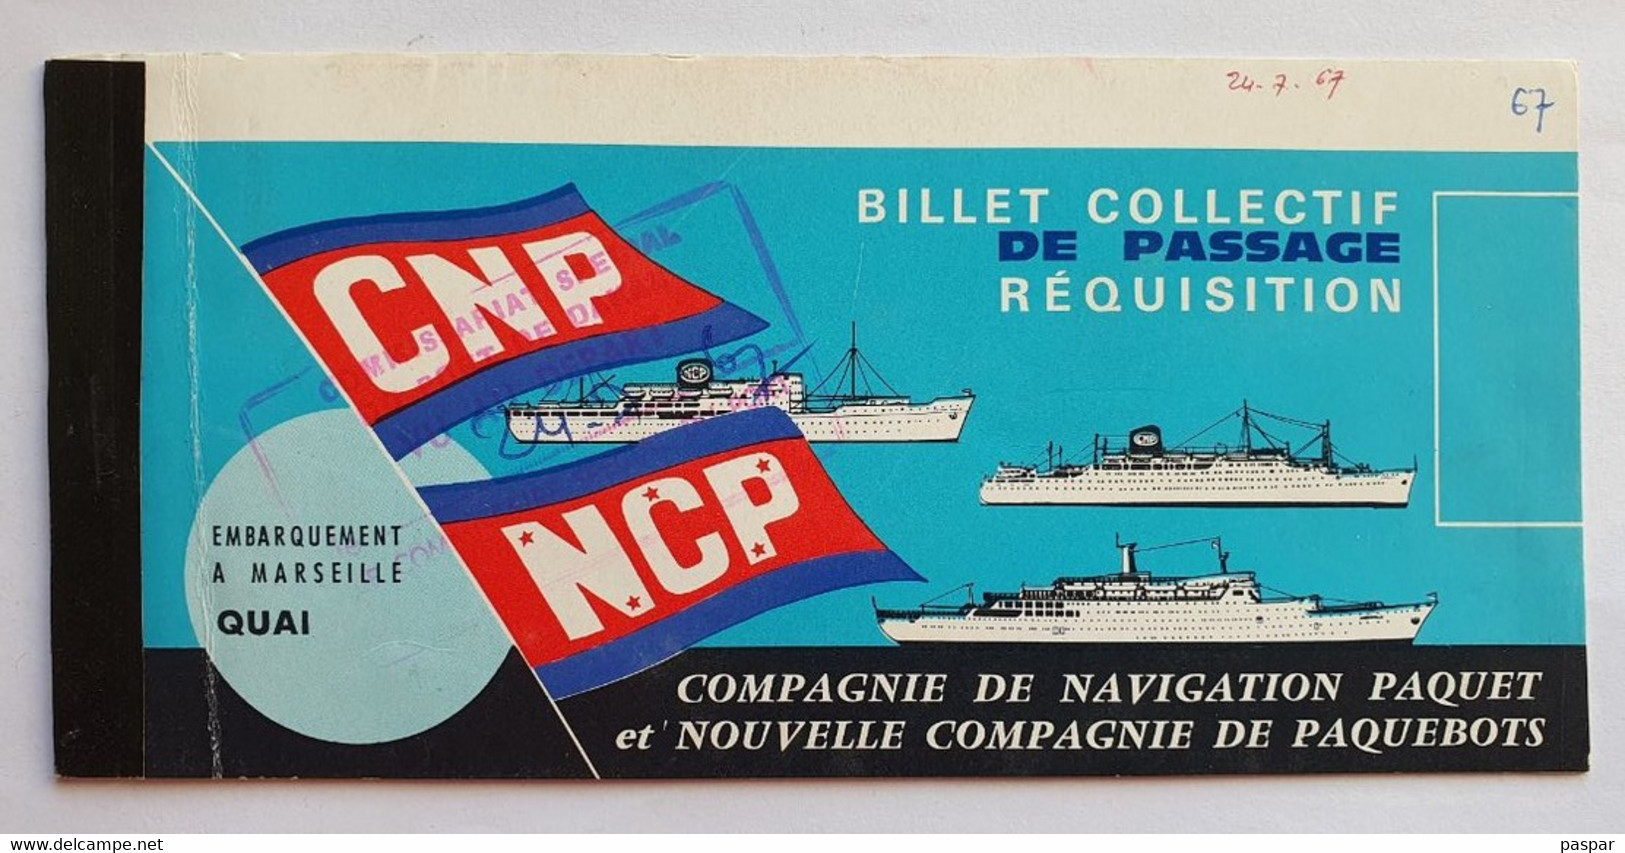 COMPAGNIE DE NAVIGATION PAQUET - Billet De Passage Réquisition DAKAR MARSEILLE - Ancerville - 1967 - Mondo